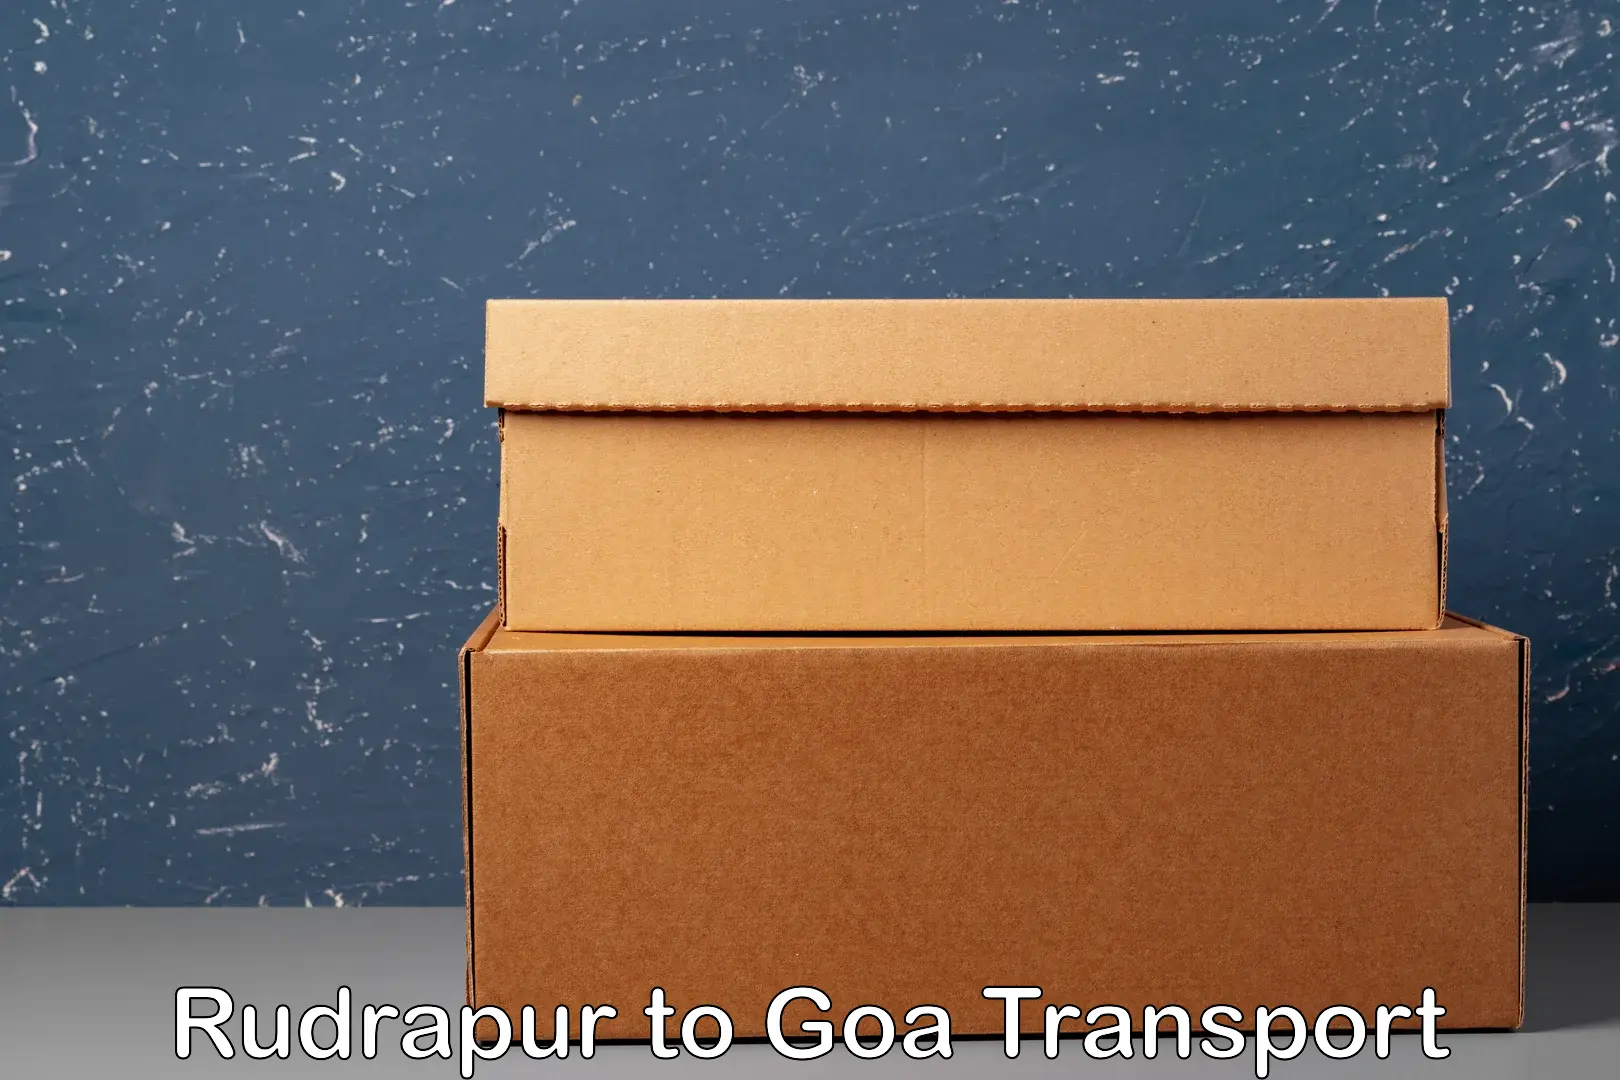 Cargo train transport services Rudrapur to Vasco da Gama